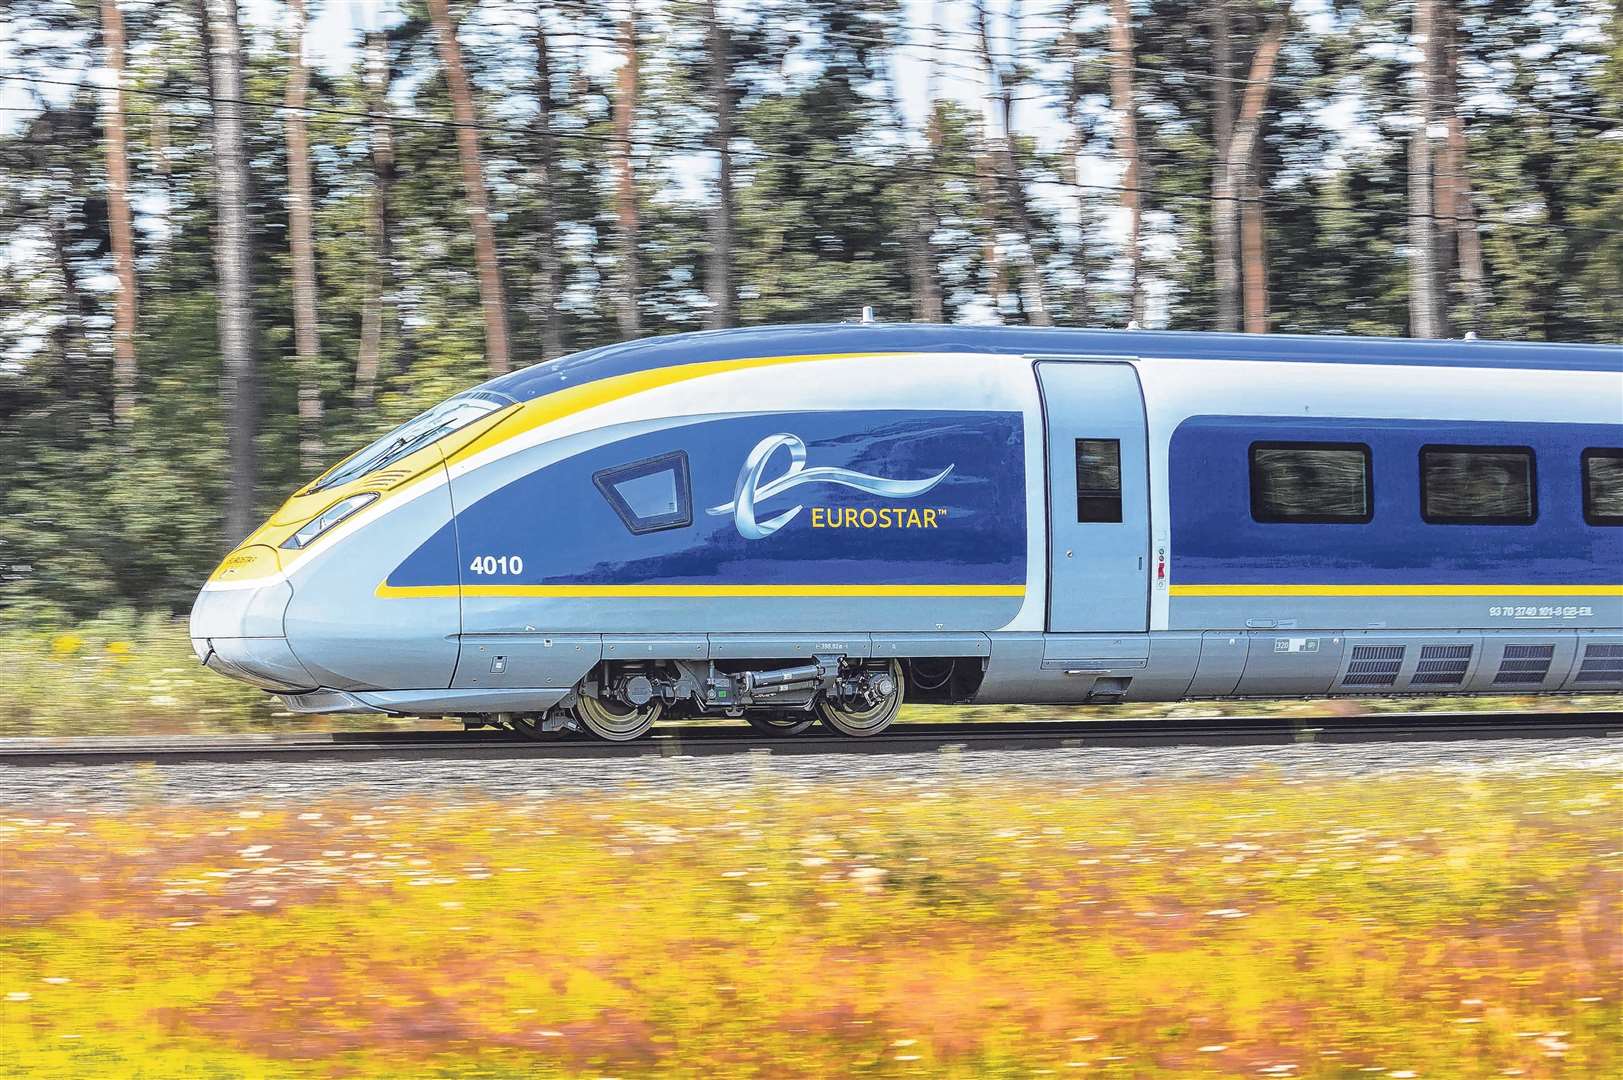 A Eurostar e320 train